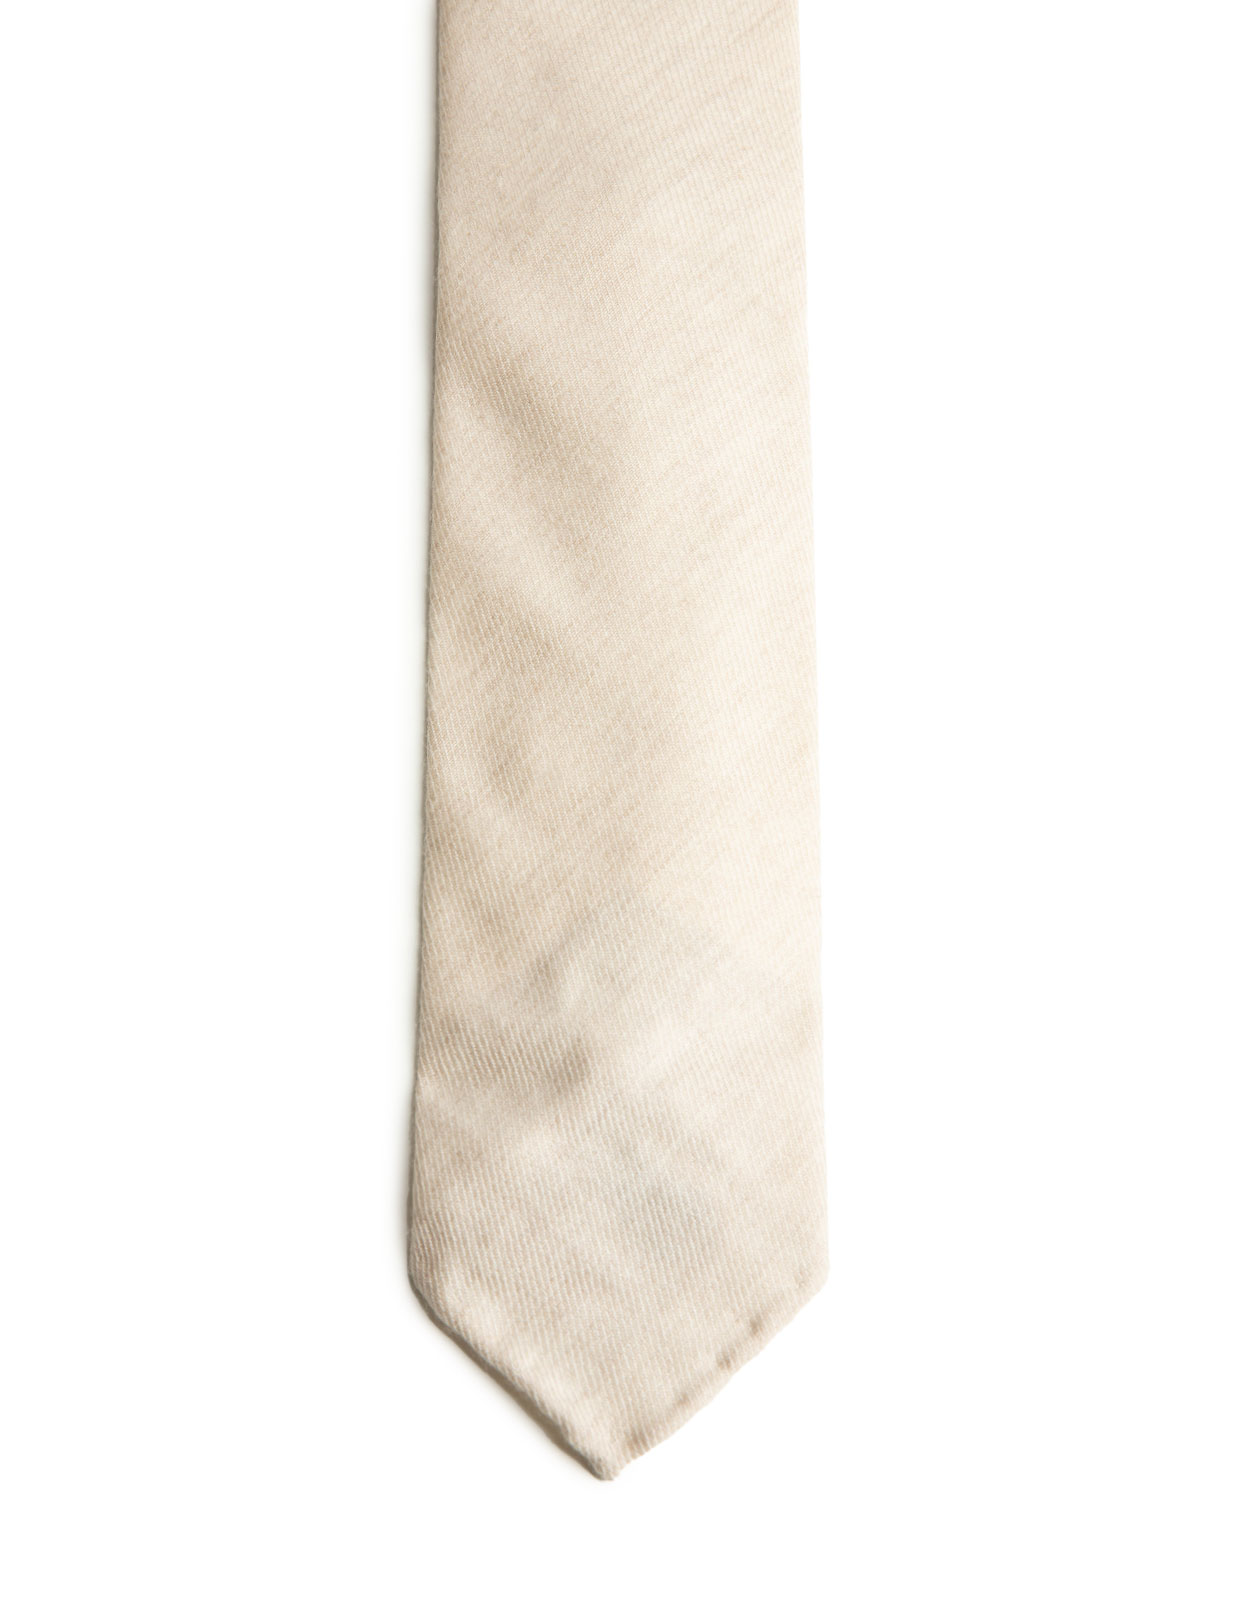 Untipped Cashmere Tie Cream Beige